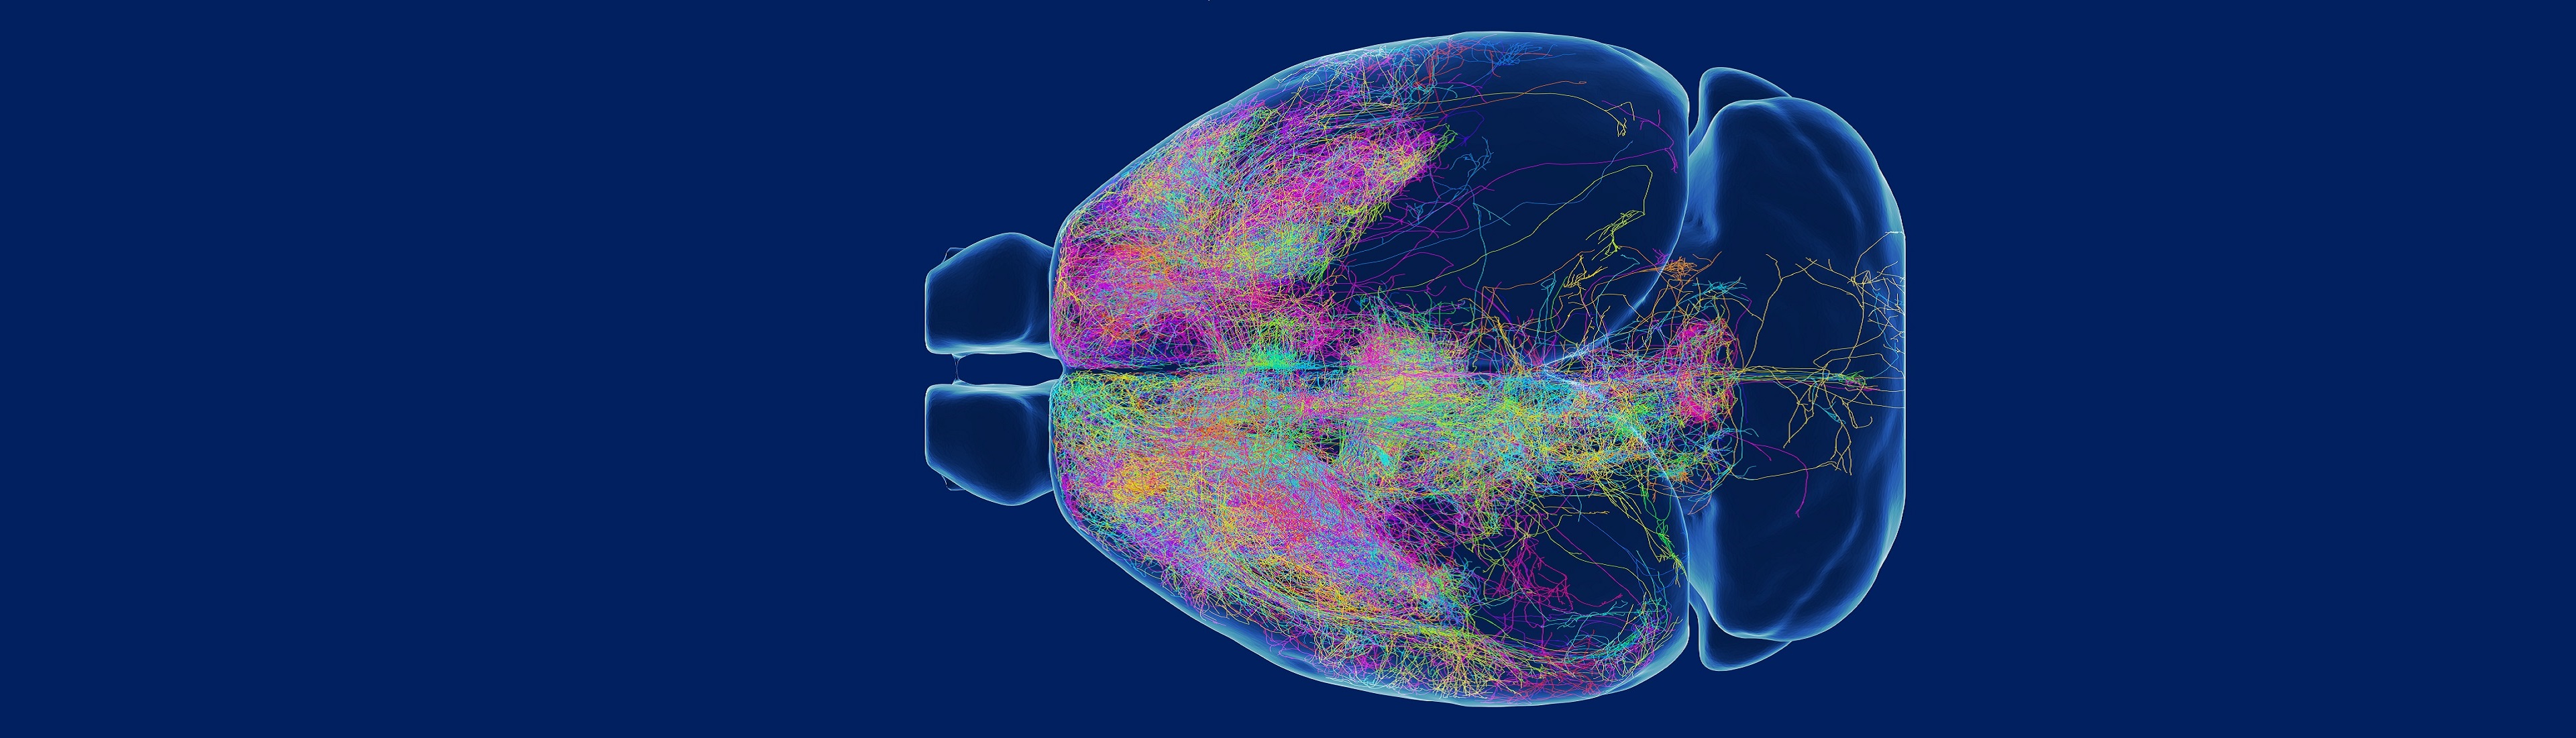 中科院脑智卓越中心发布小鼠前额叶单神经元投射图谱的研究成果